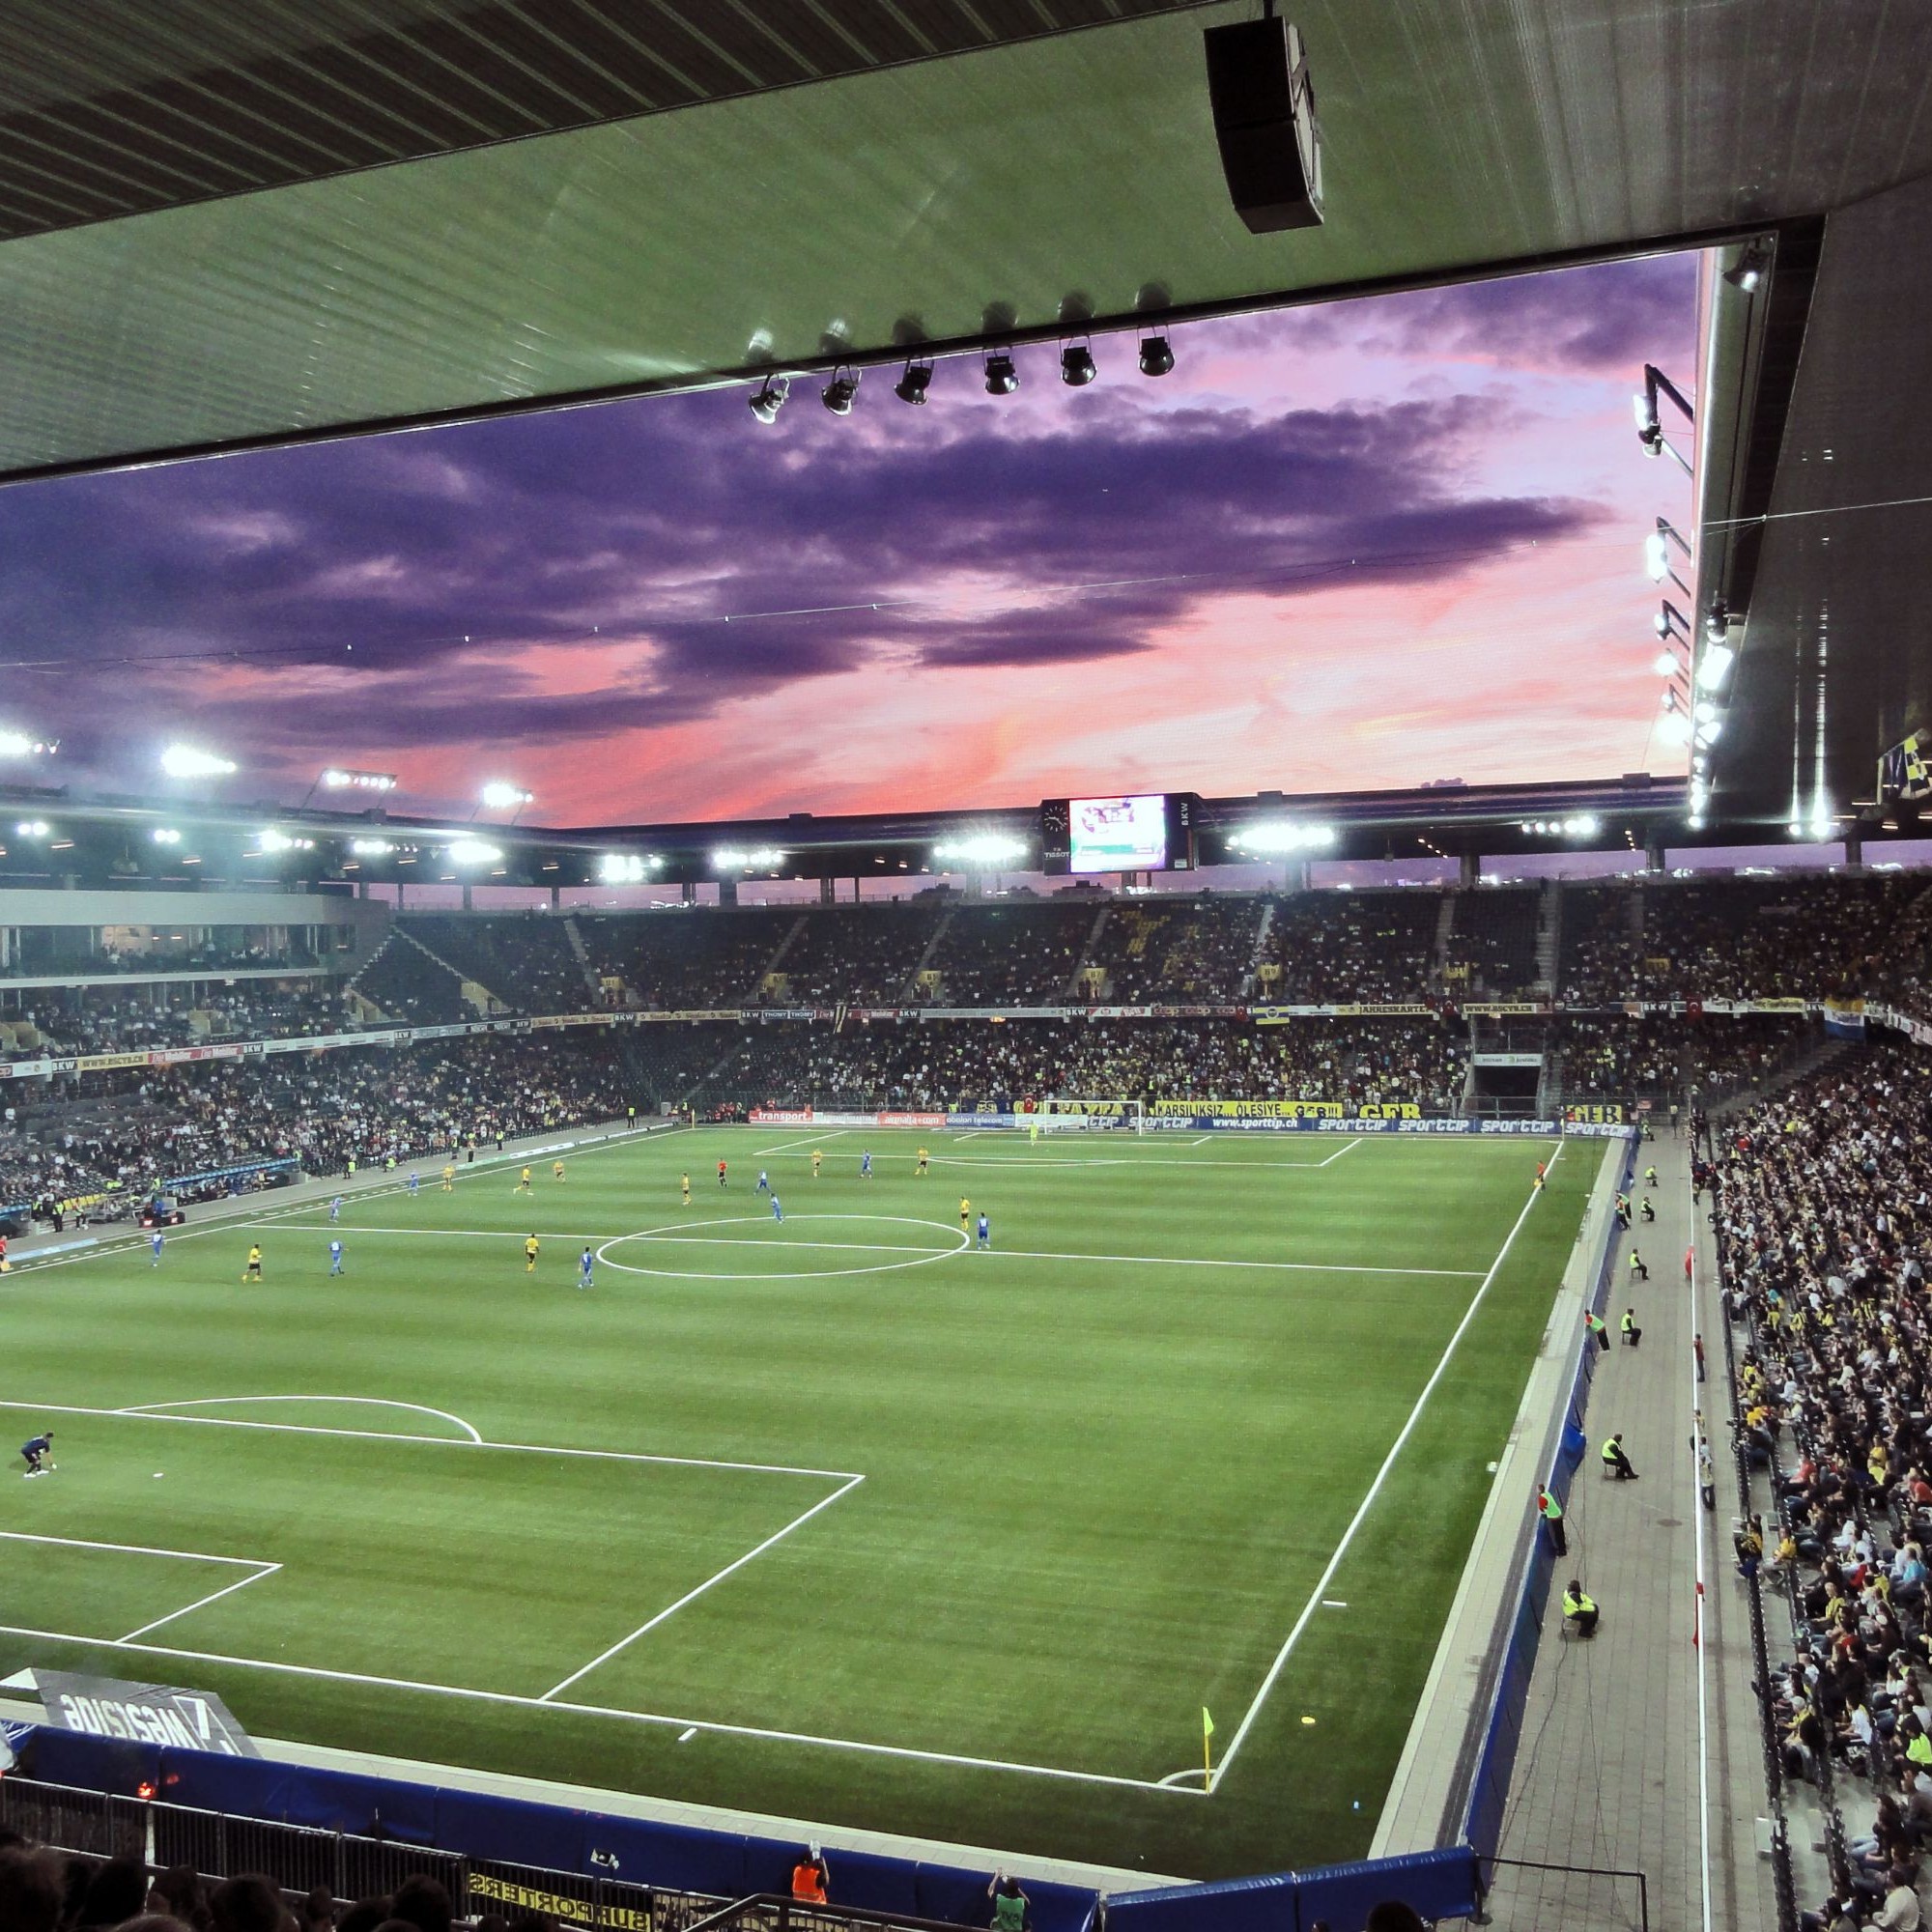 Das Stade de Suisse weist drei offene Seiten auf.